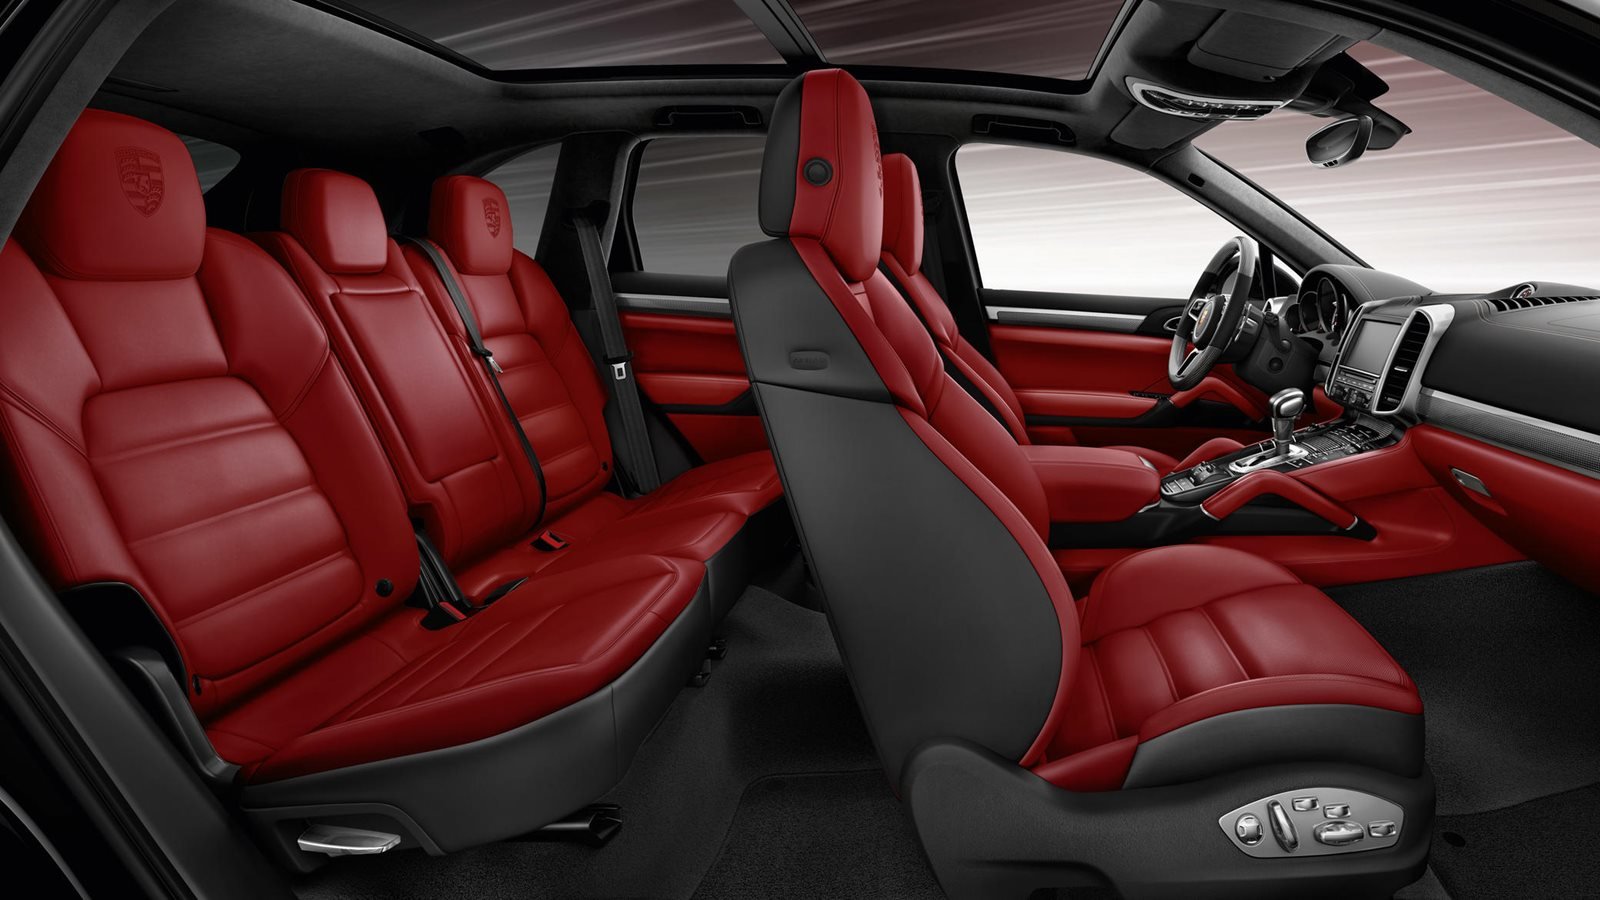 Porsche Cayenne interior - Seats